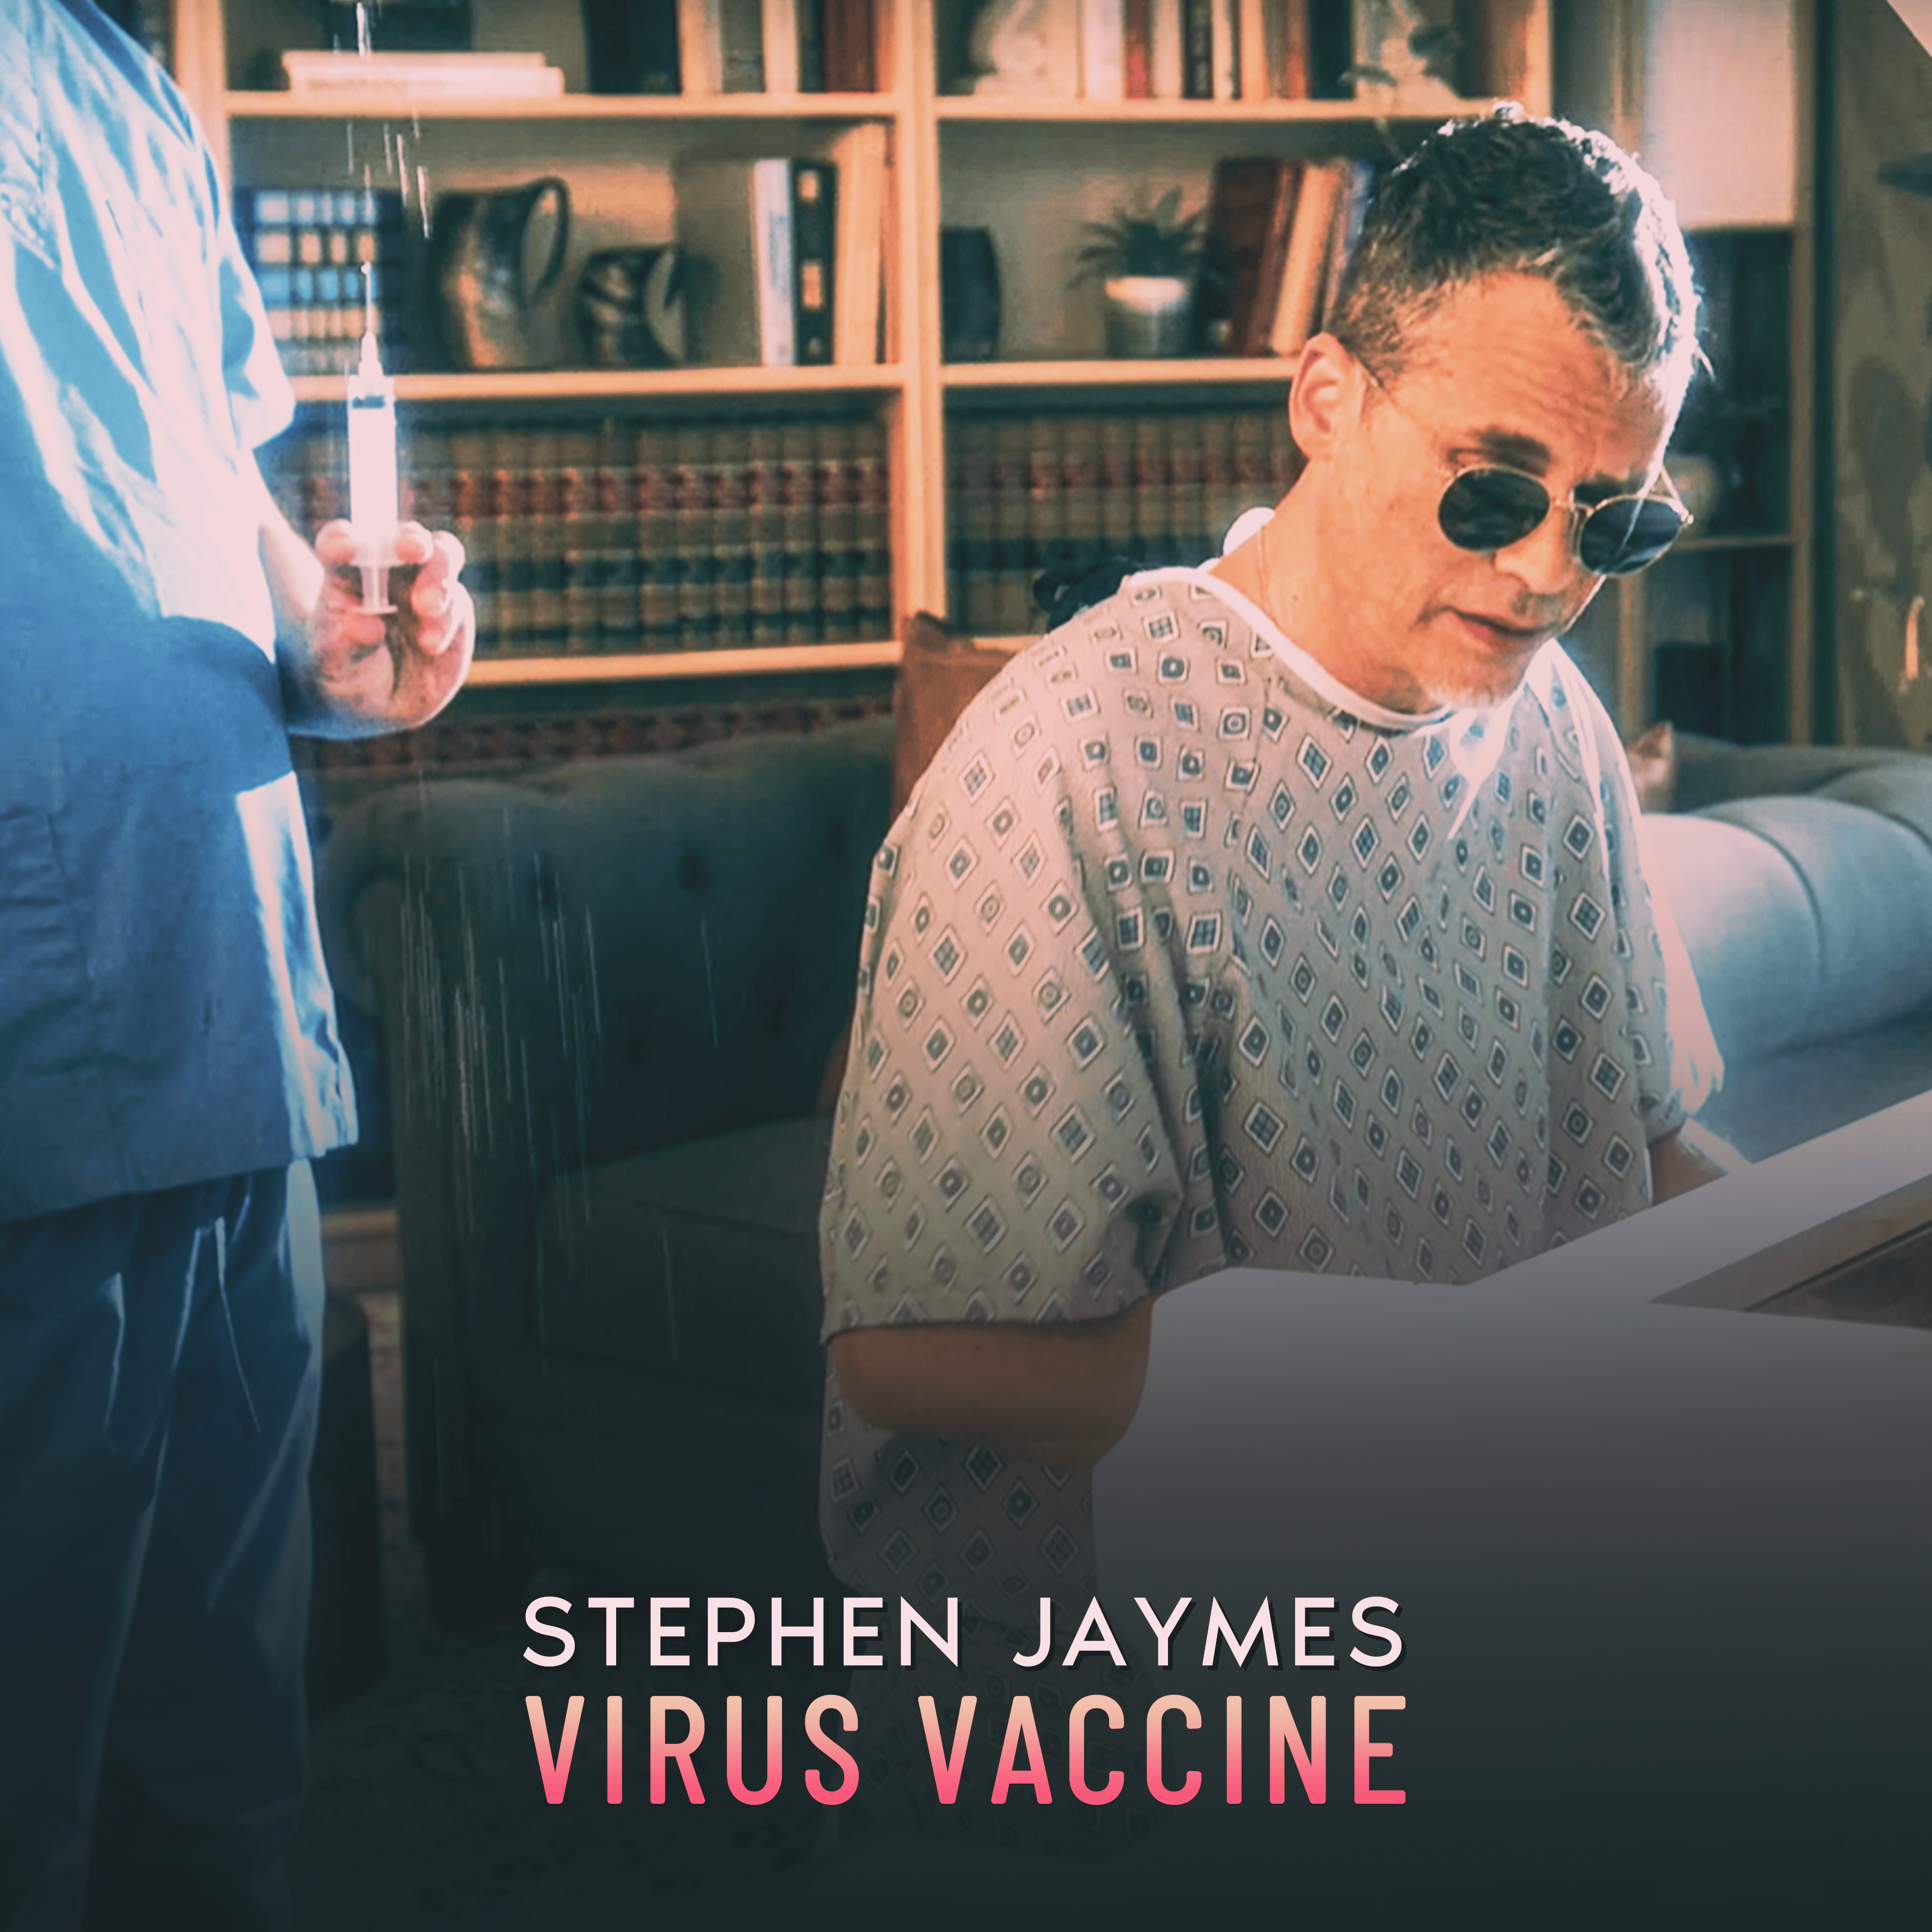 Stephen Jaymes Virus Vaccine